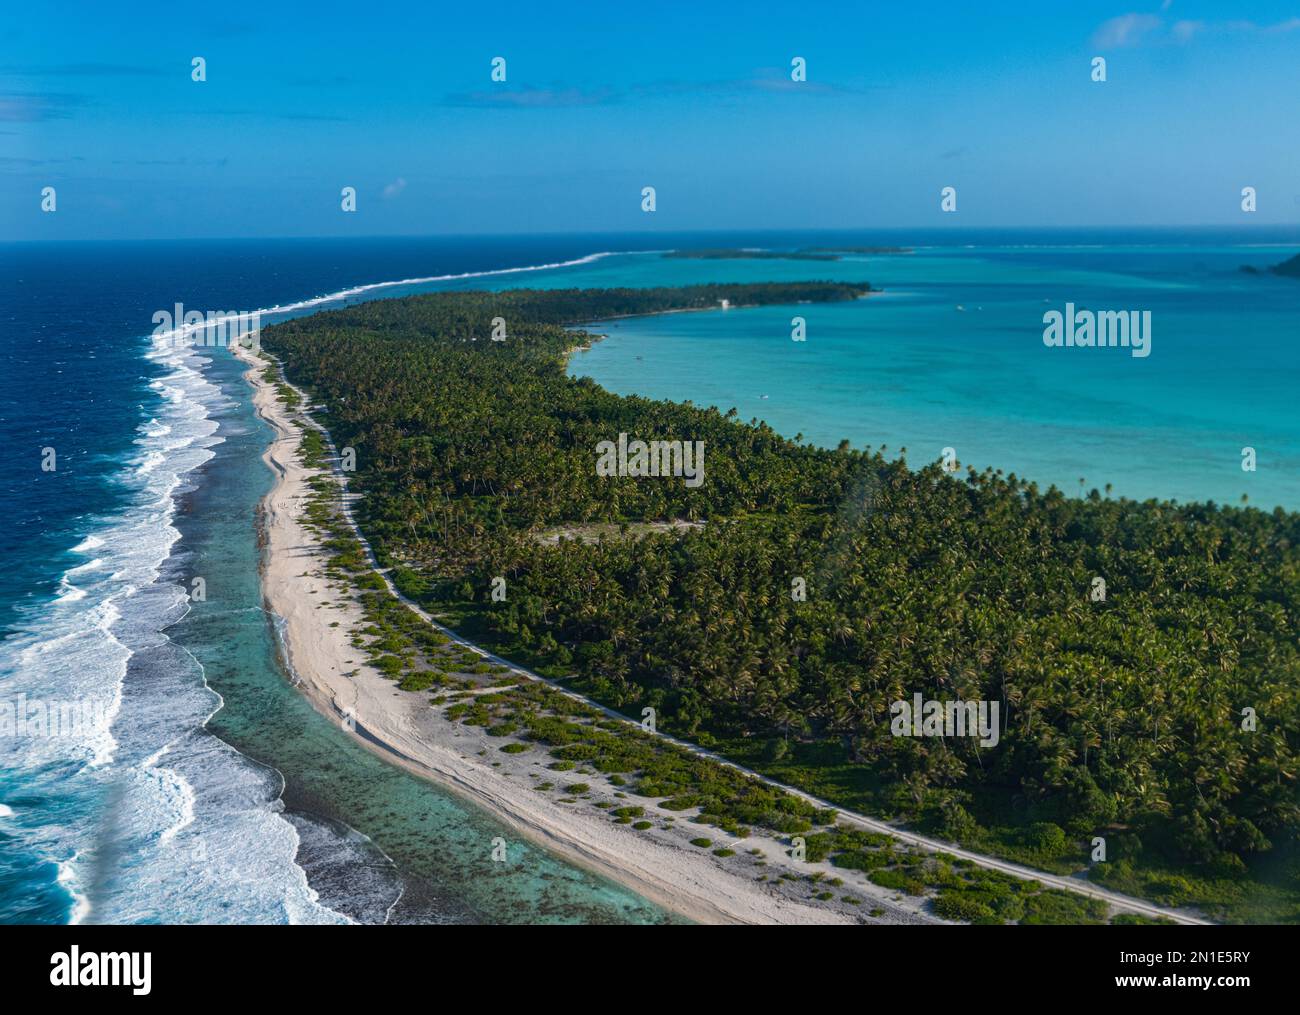 Luftaufnahme der Lagune von Maupiti, Gesellschaftsinseln, Französisch-Polynesien, Südpazifik, Pazifik Stockfoto